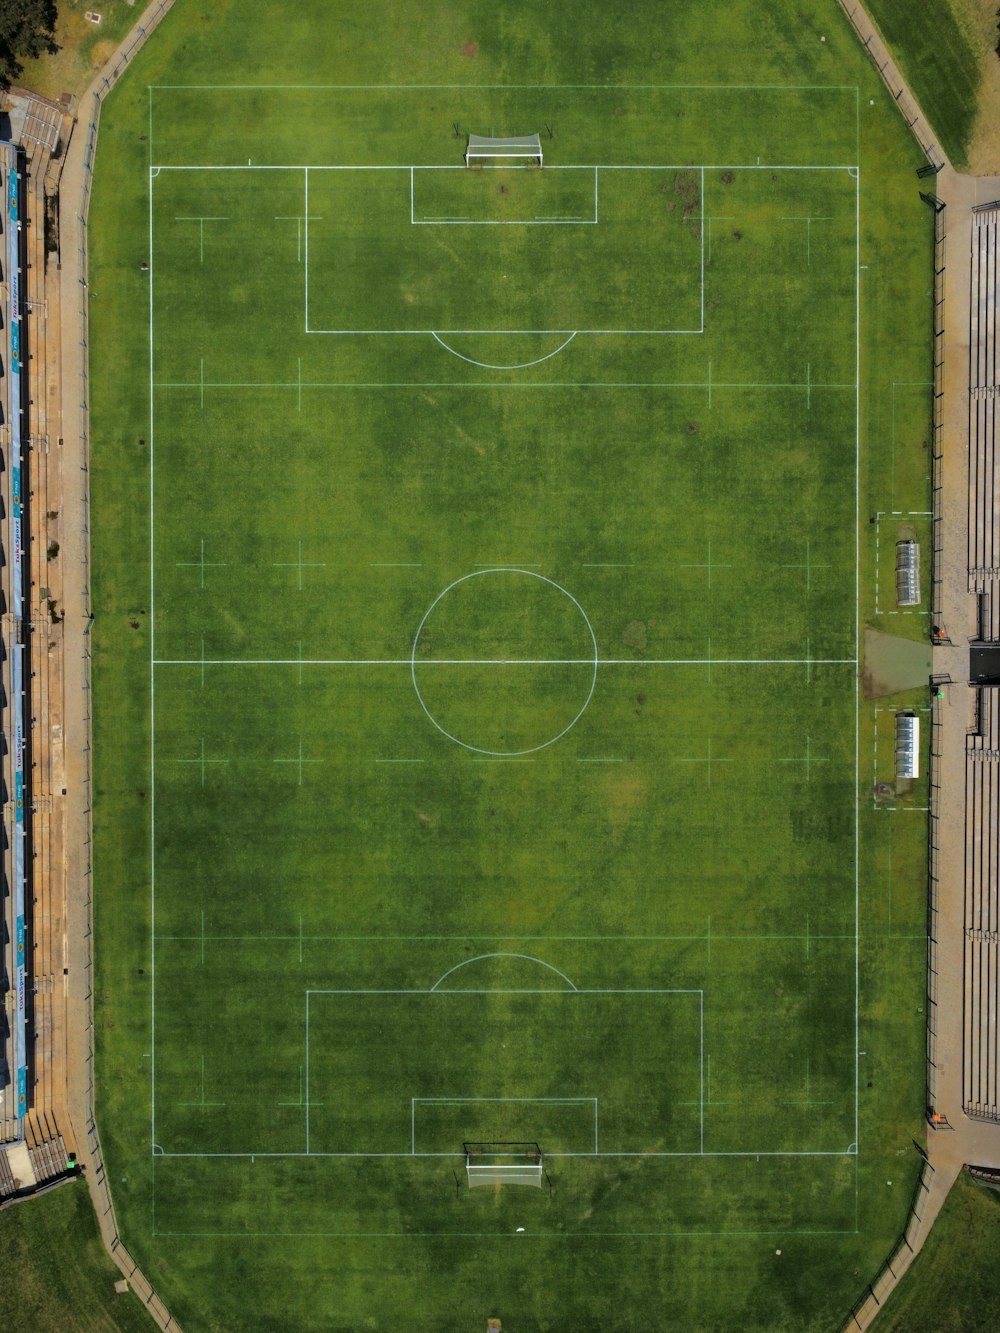 都市のサッカー場の航空写真